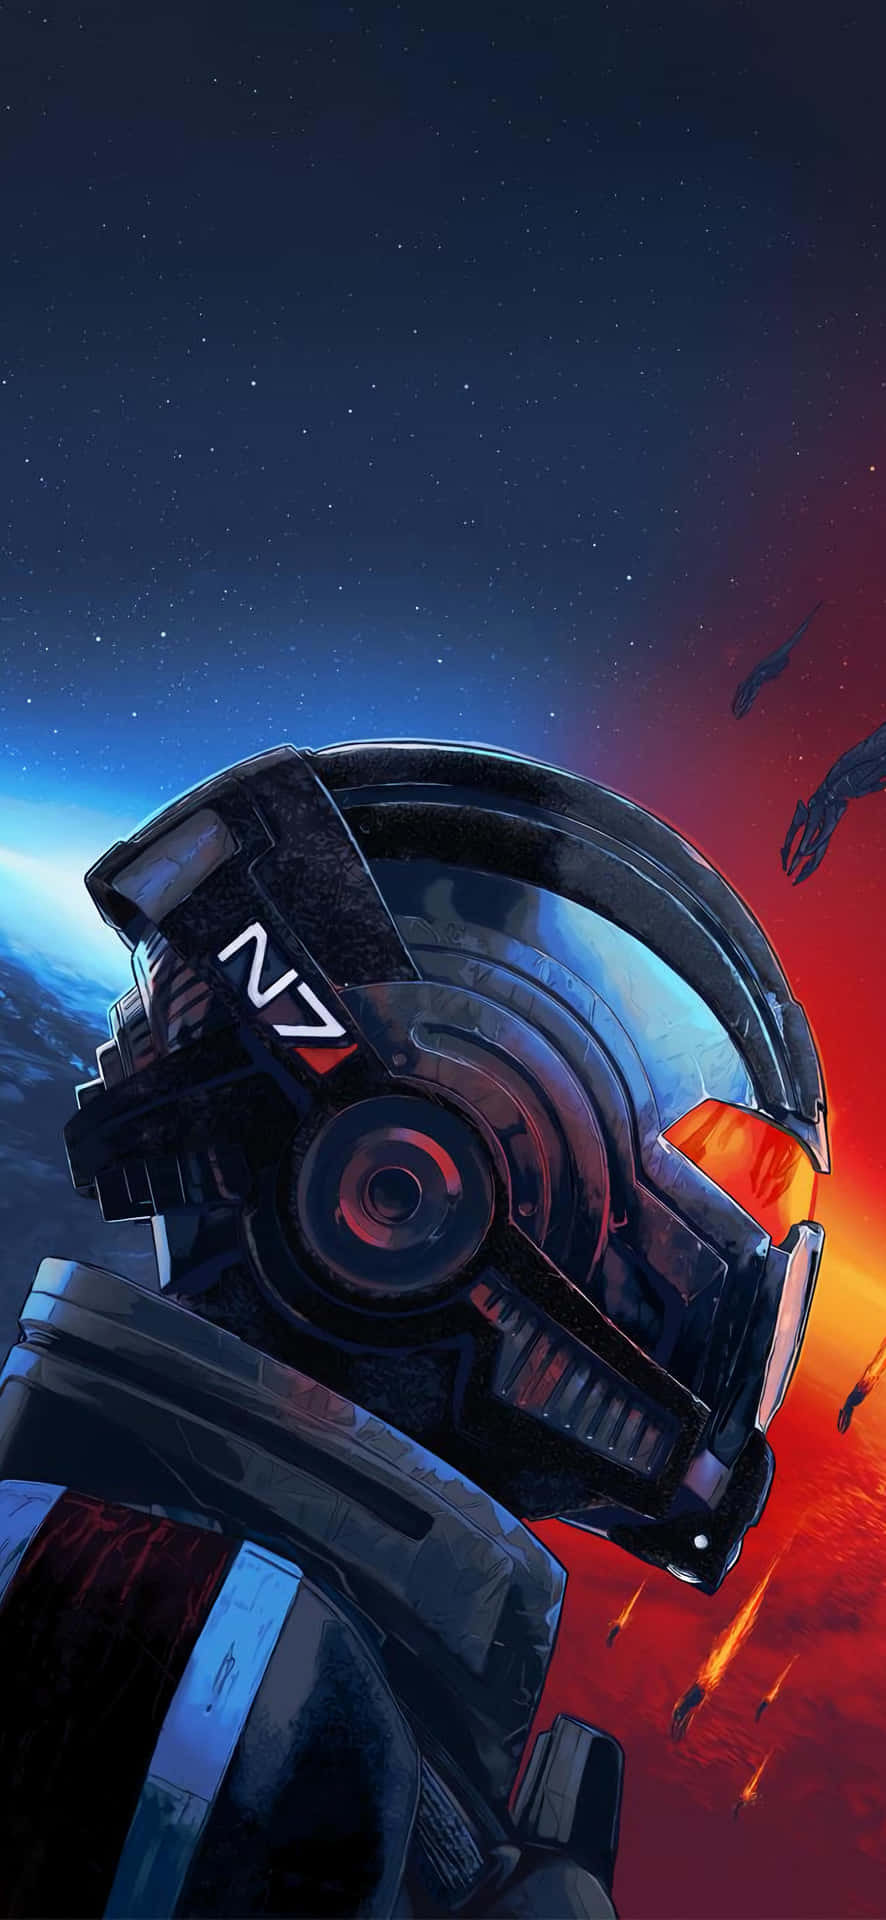 Imagemda Edição Lendária Do Mass Effect.